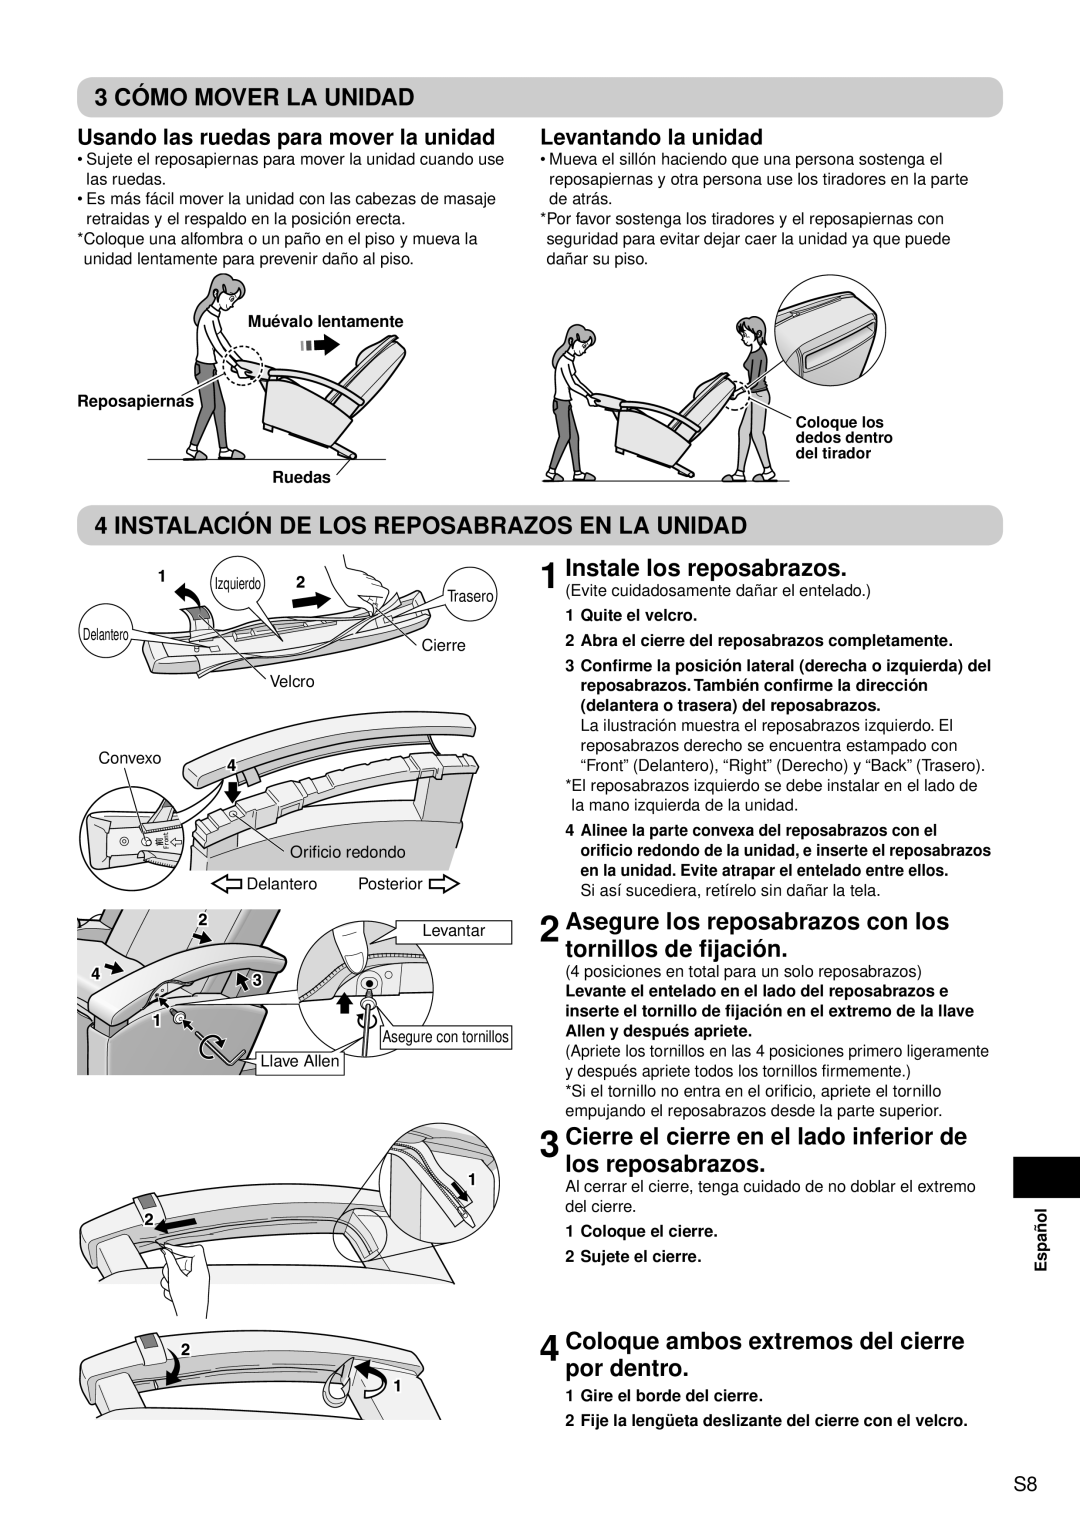 Panasonic EP1080 manual 3 CÓMO MOVER LA UNIDAD, Instalación De Los Reposabrazos En La Unidad, Instale los reposabrazos 